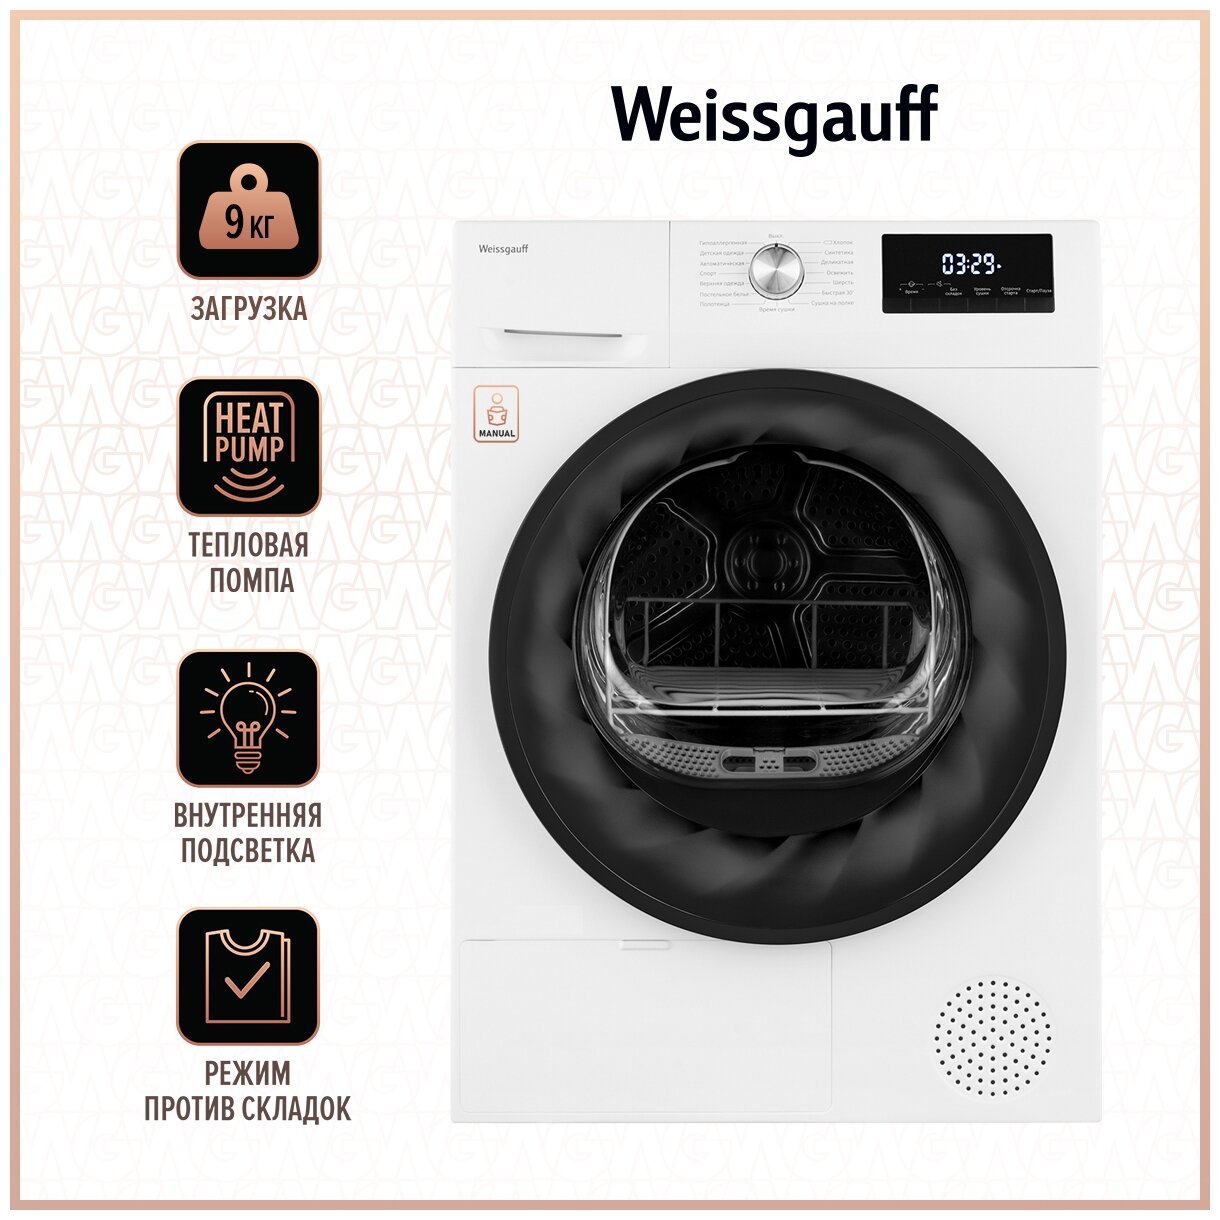 Сушильная машина Weissgauff WD 6109 Heat Pump, белый — купить в интернет-магазине по низкой цене на Яндекс Маркете